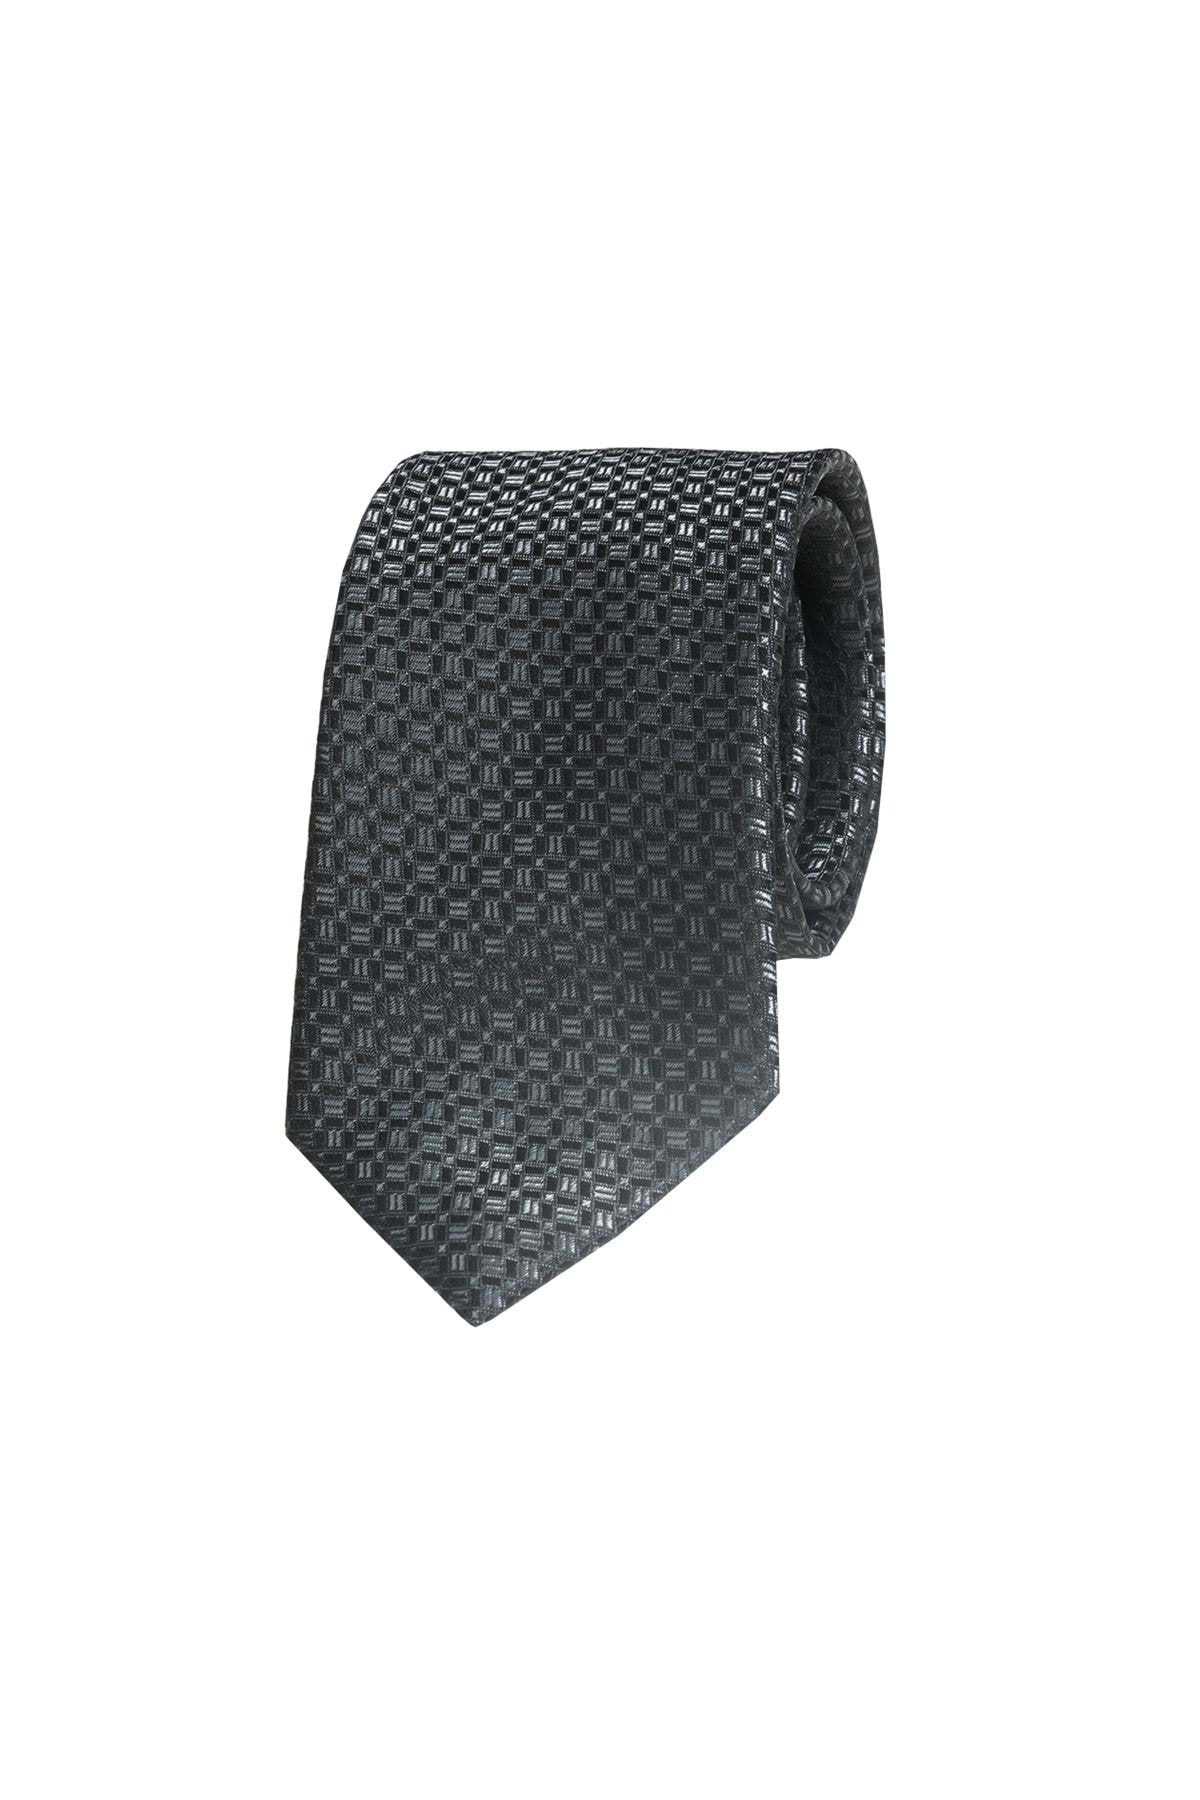 خرید کراوات خفن برند Exve Exclusive کد ty118749597